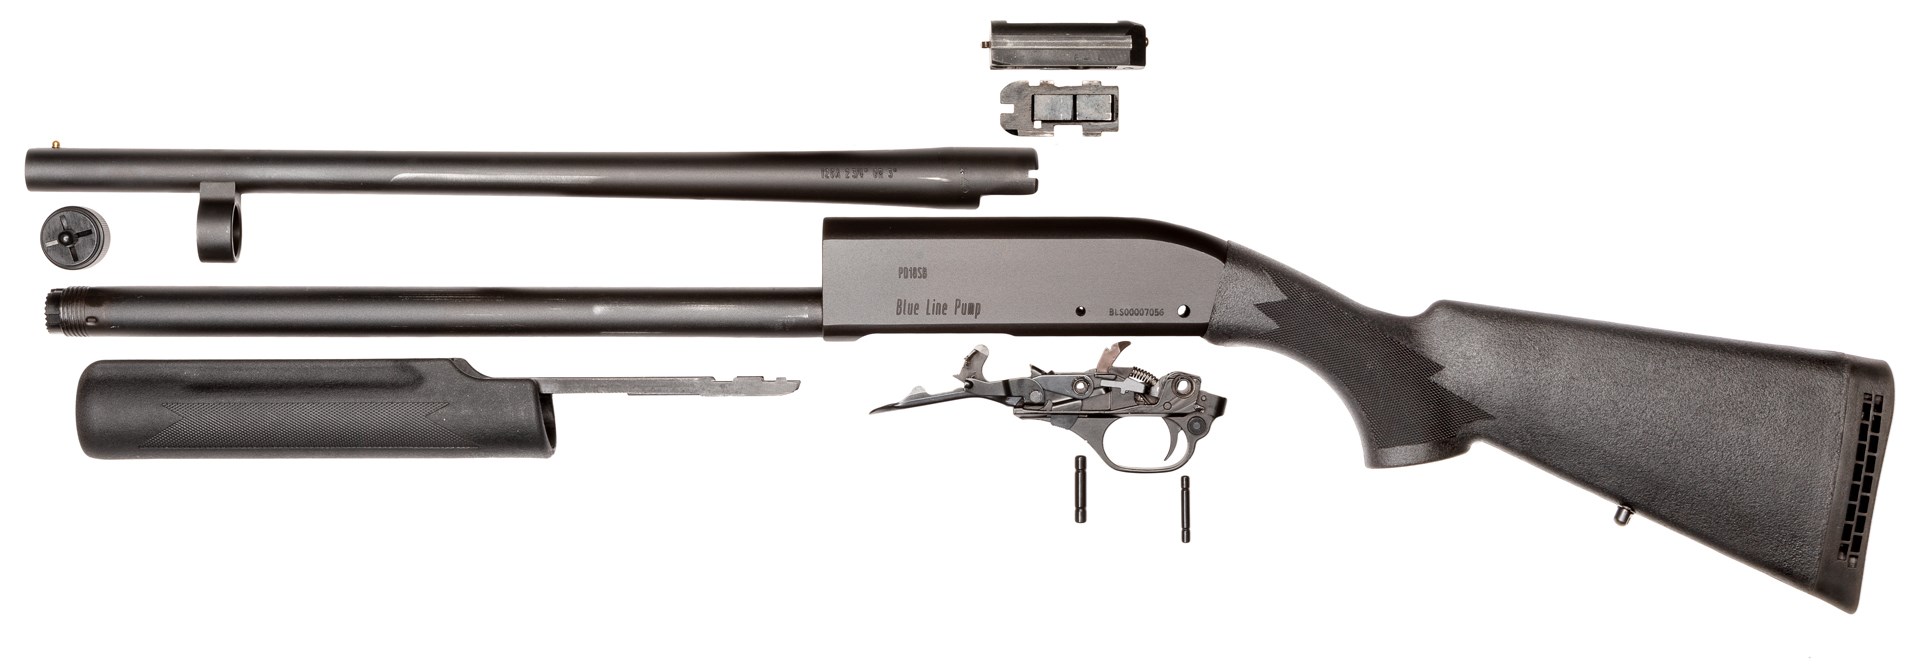 left-side view blue line solutions pump-action shotgun parts diassembled arrangement on white